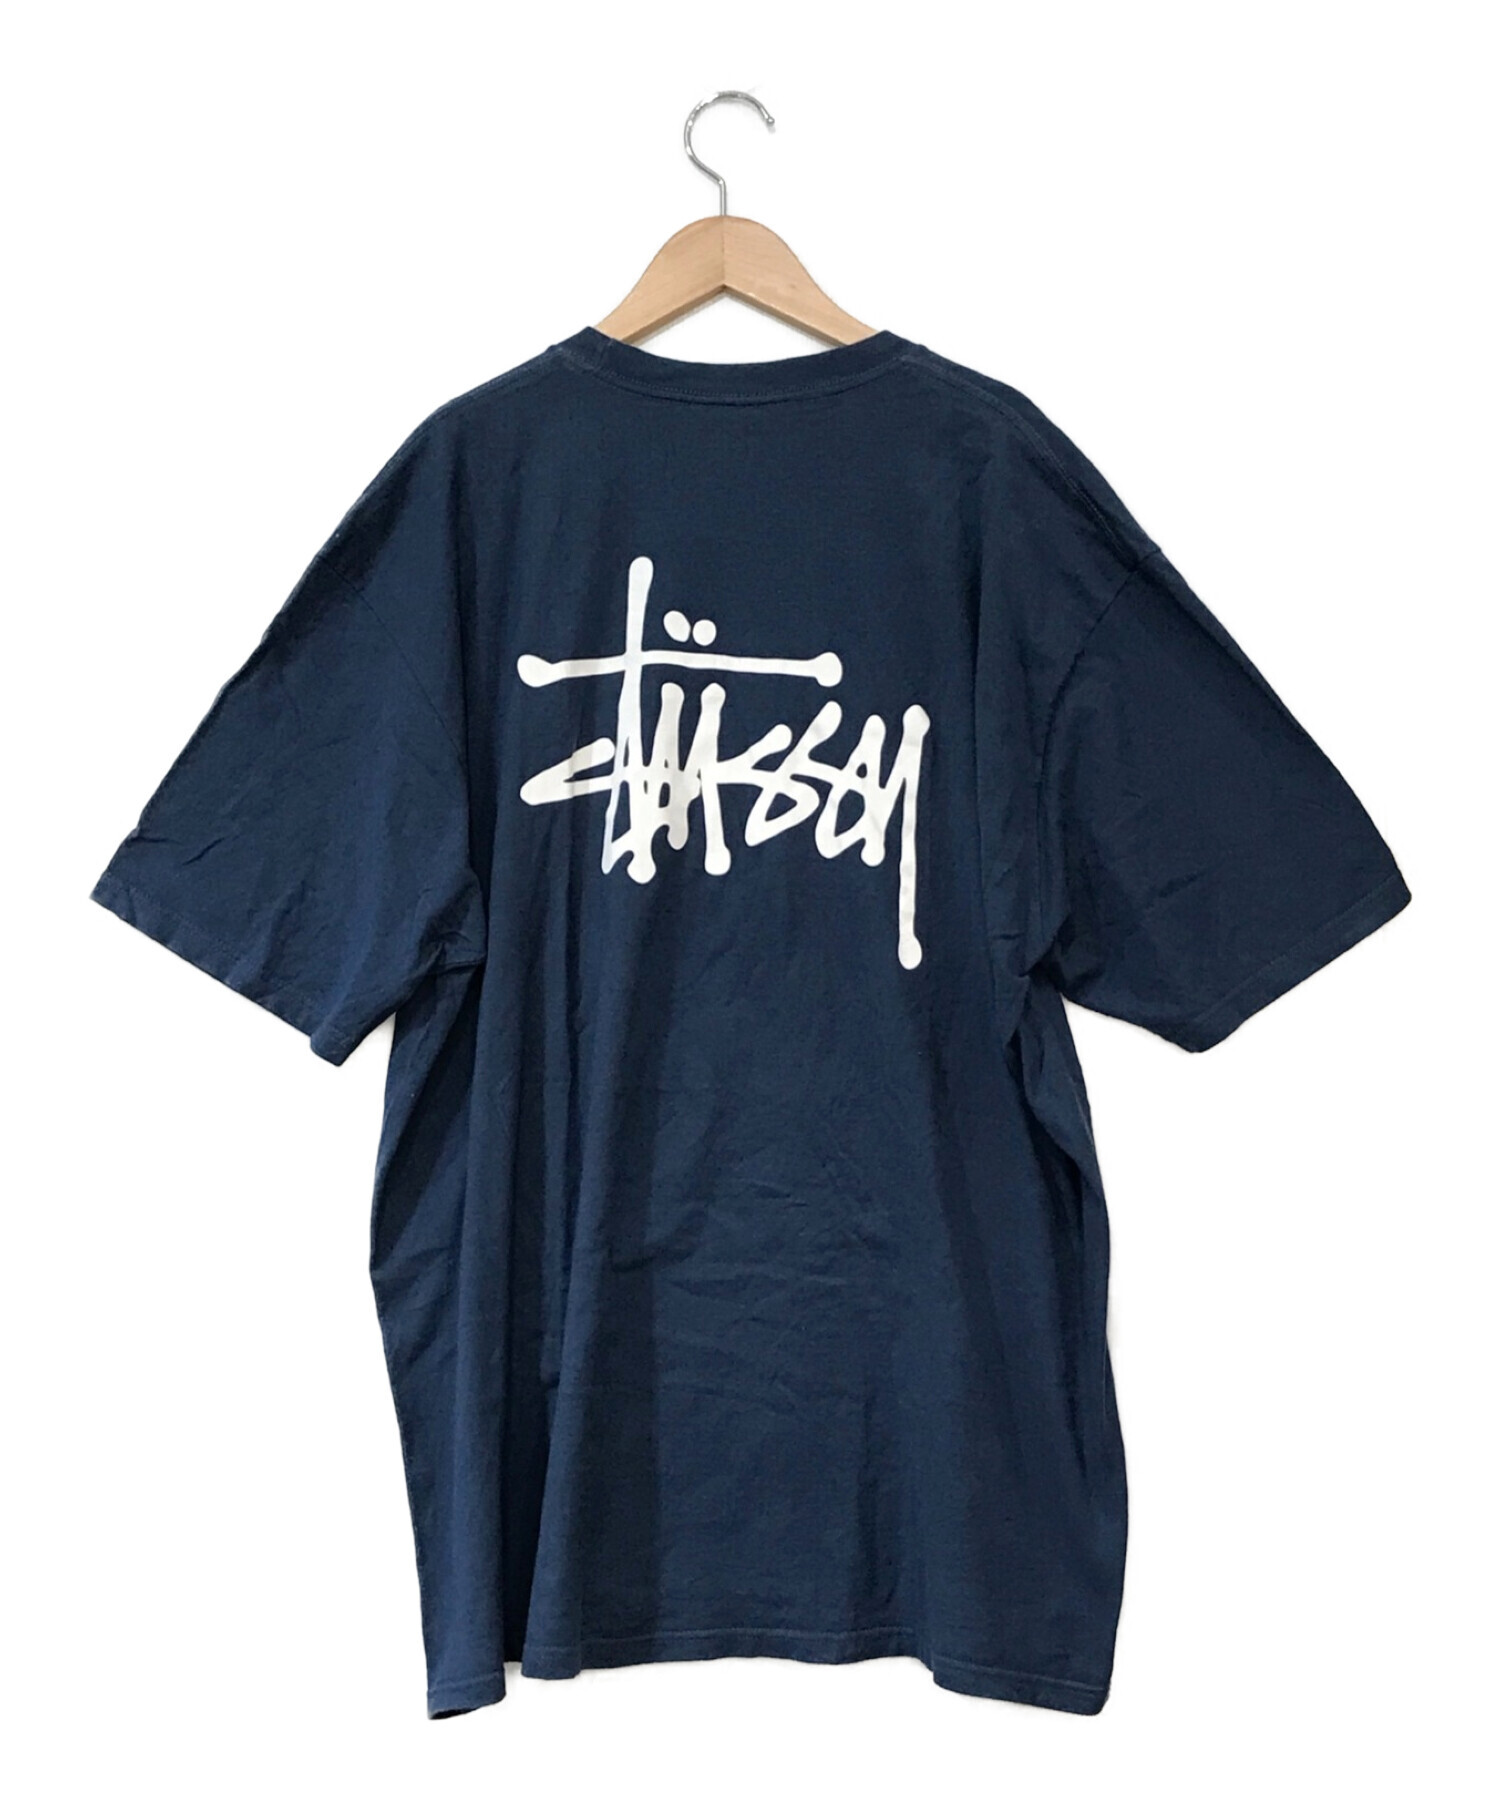 【バックプリント、ショーンフォトロゴ】stussyオーバーサイズ青Tシャツ